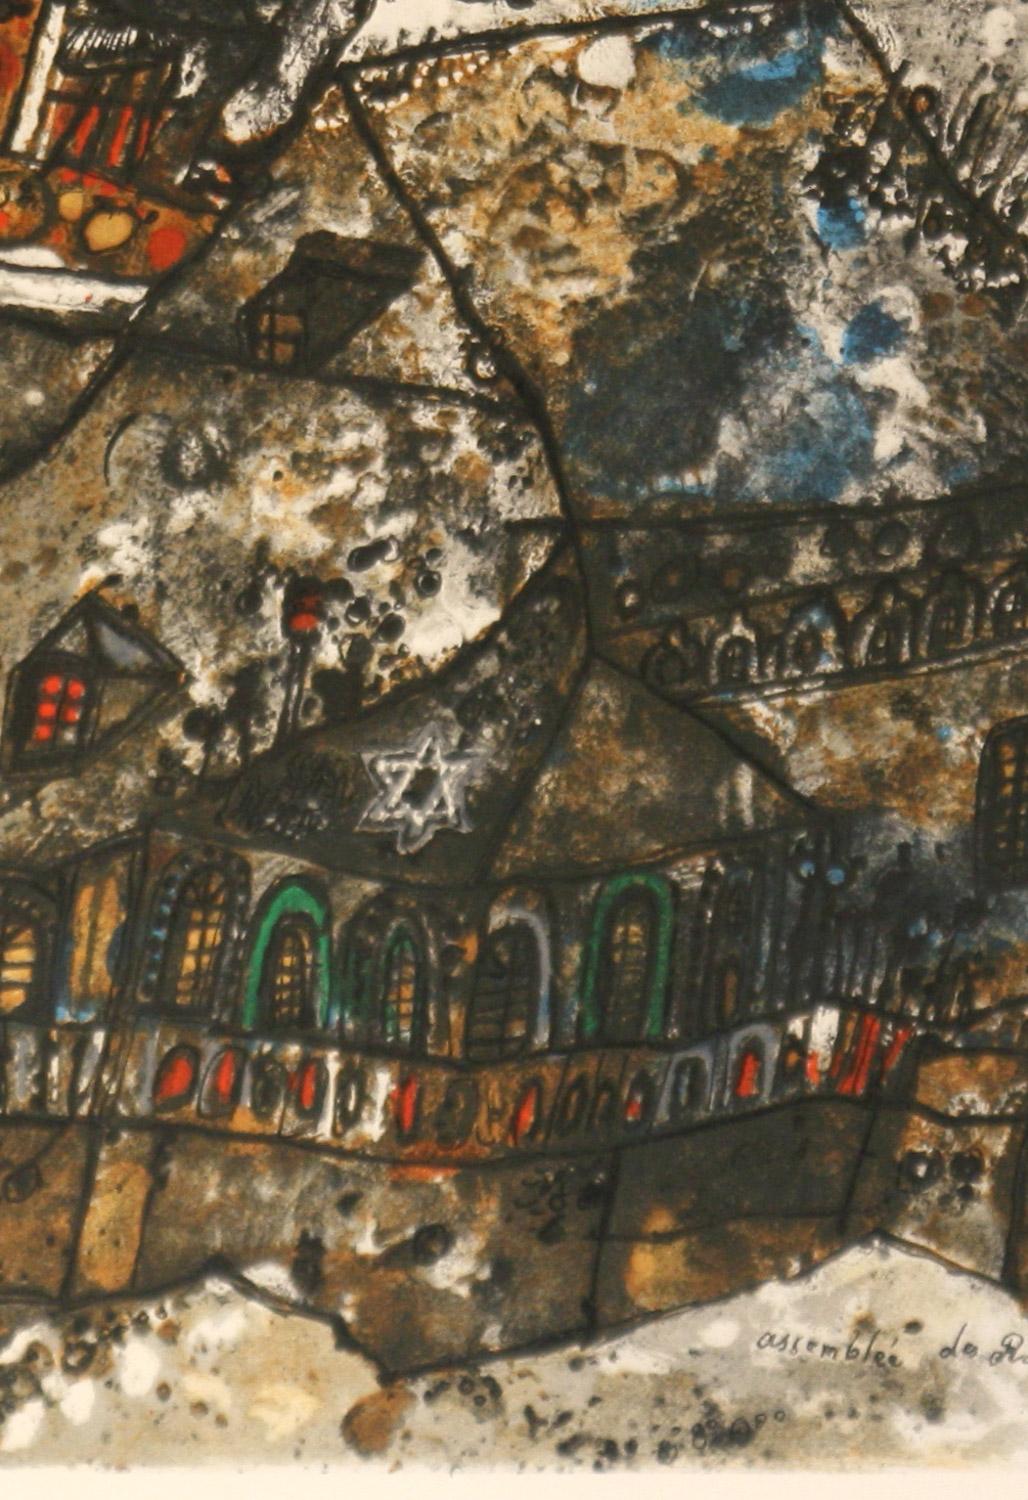      Assemblee des Rabbins et Notables au 16 siecle dans un village de Lithuanie ist ein künstlerischer Originalabzug
 ( E. A. ) Lithographie von Theo Tobiasse (geb. 1927 -2012) , einem international erfolgreichen französischen Maler, Graveur,